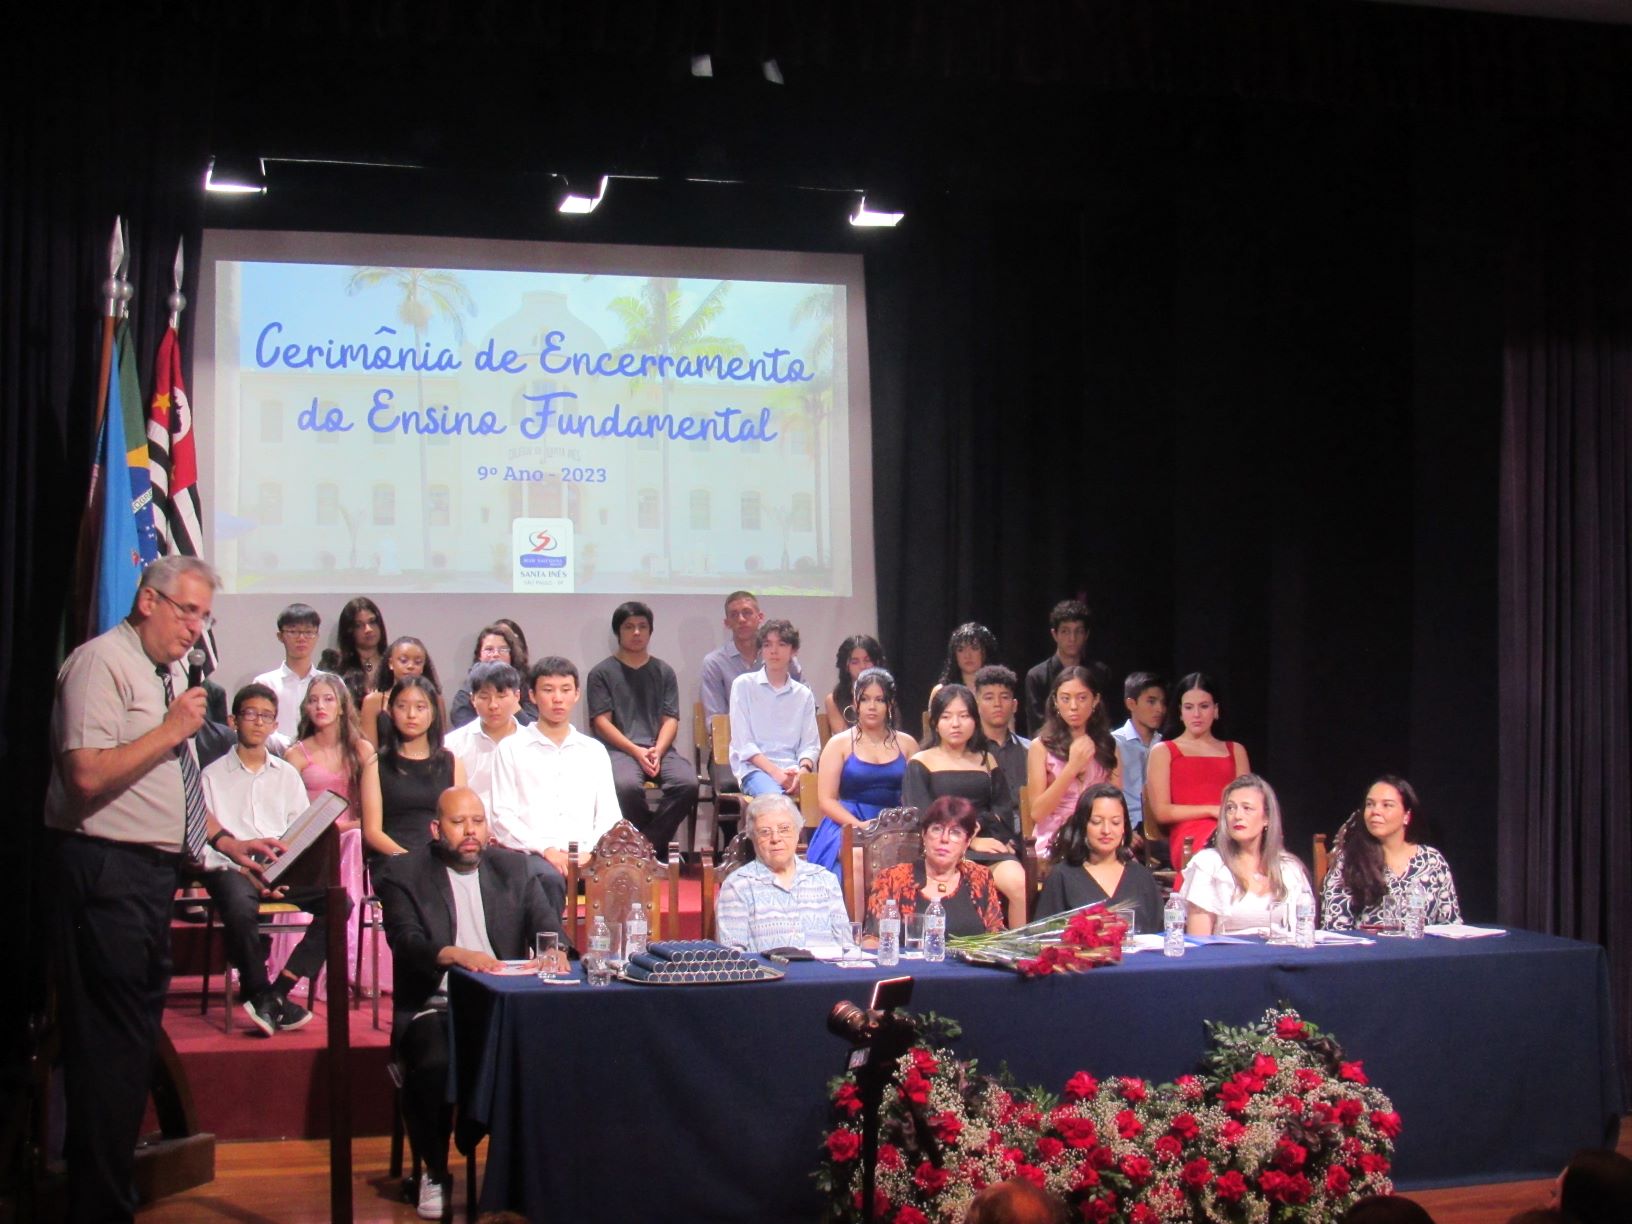 Jovens do 9º Ano participam de Cerimônia de Encerramento do Ensino Fundamental